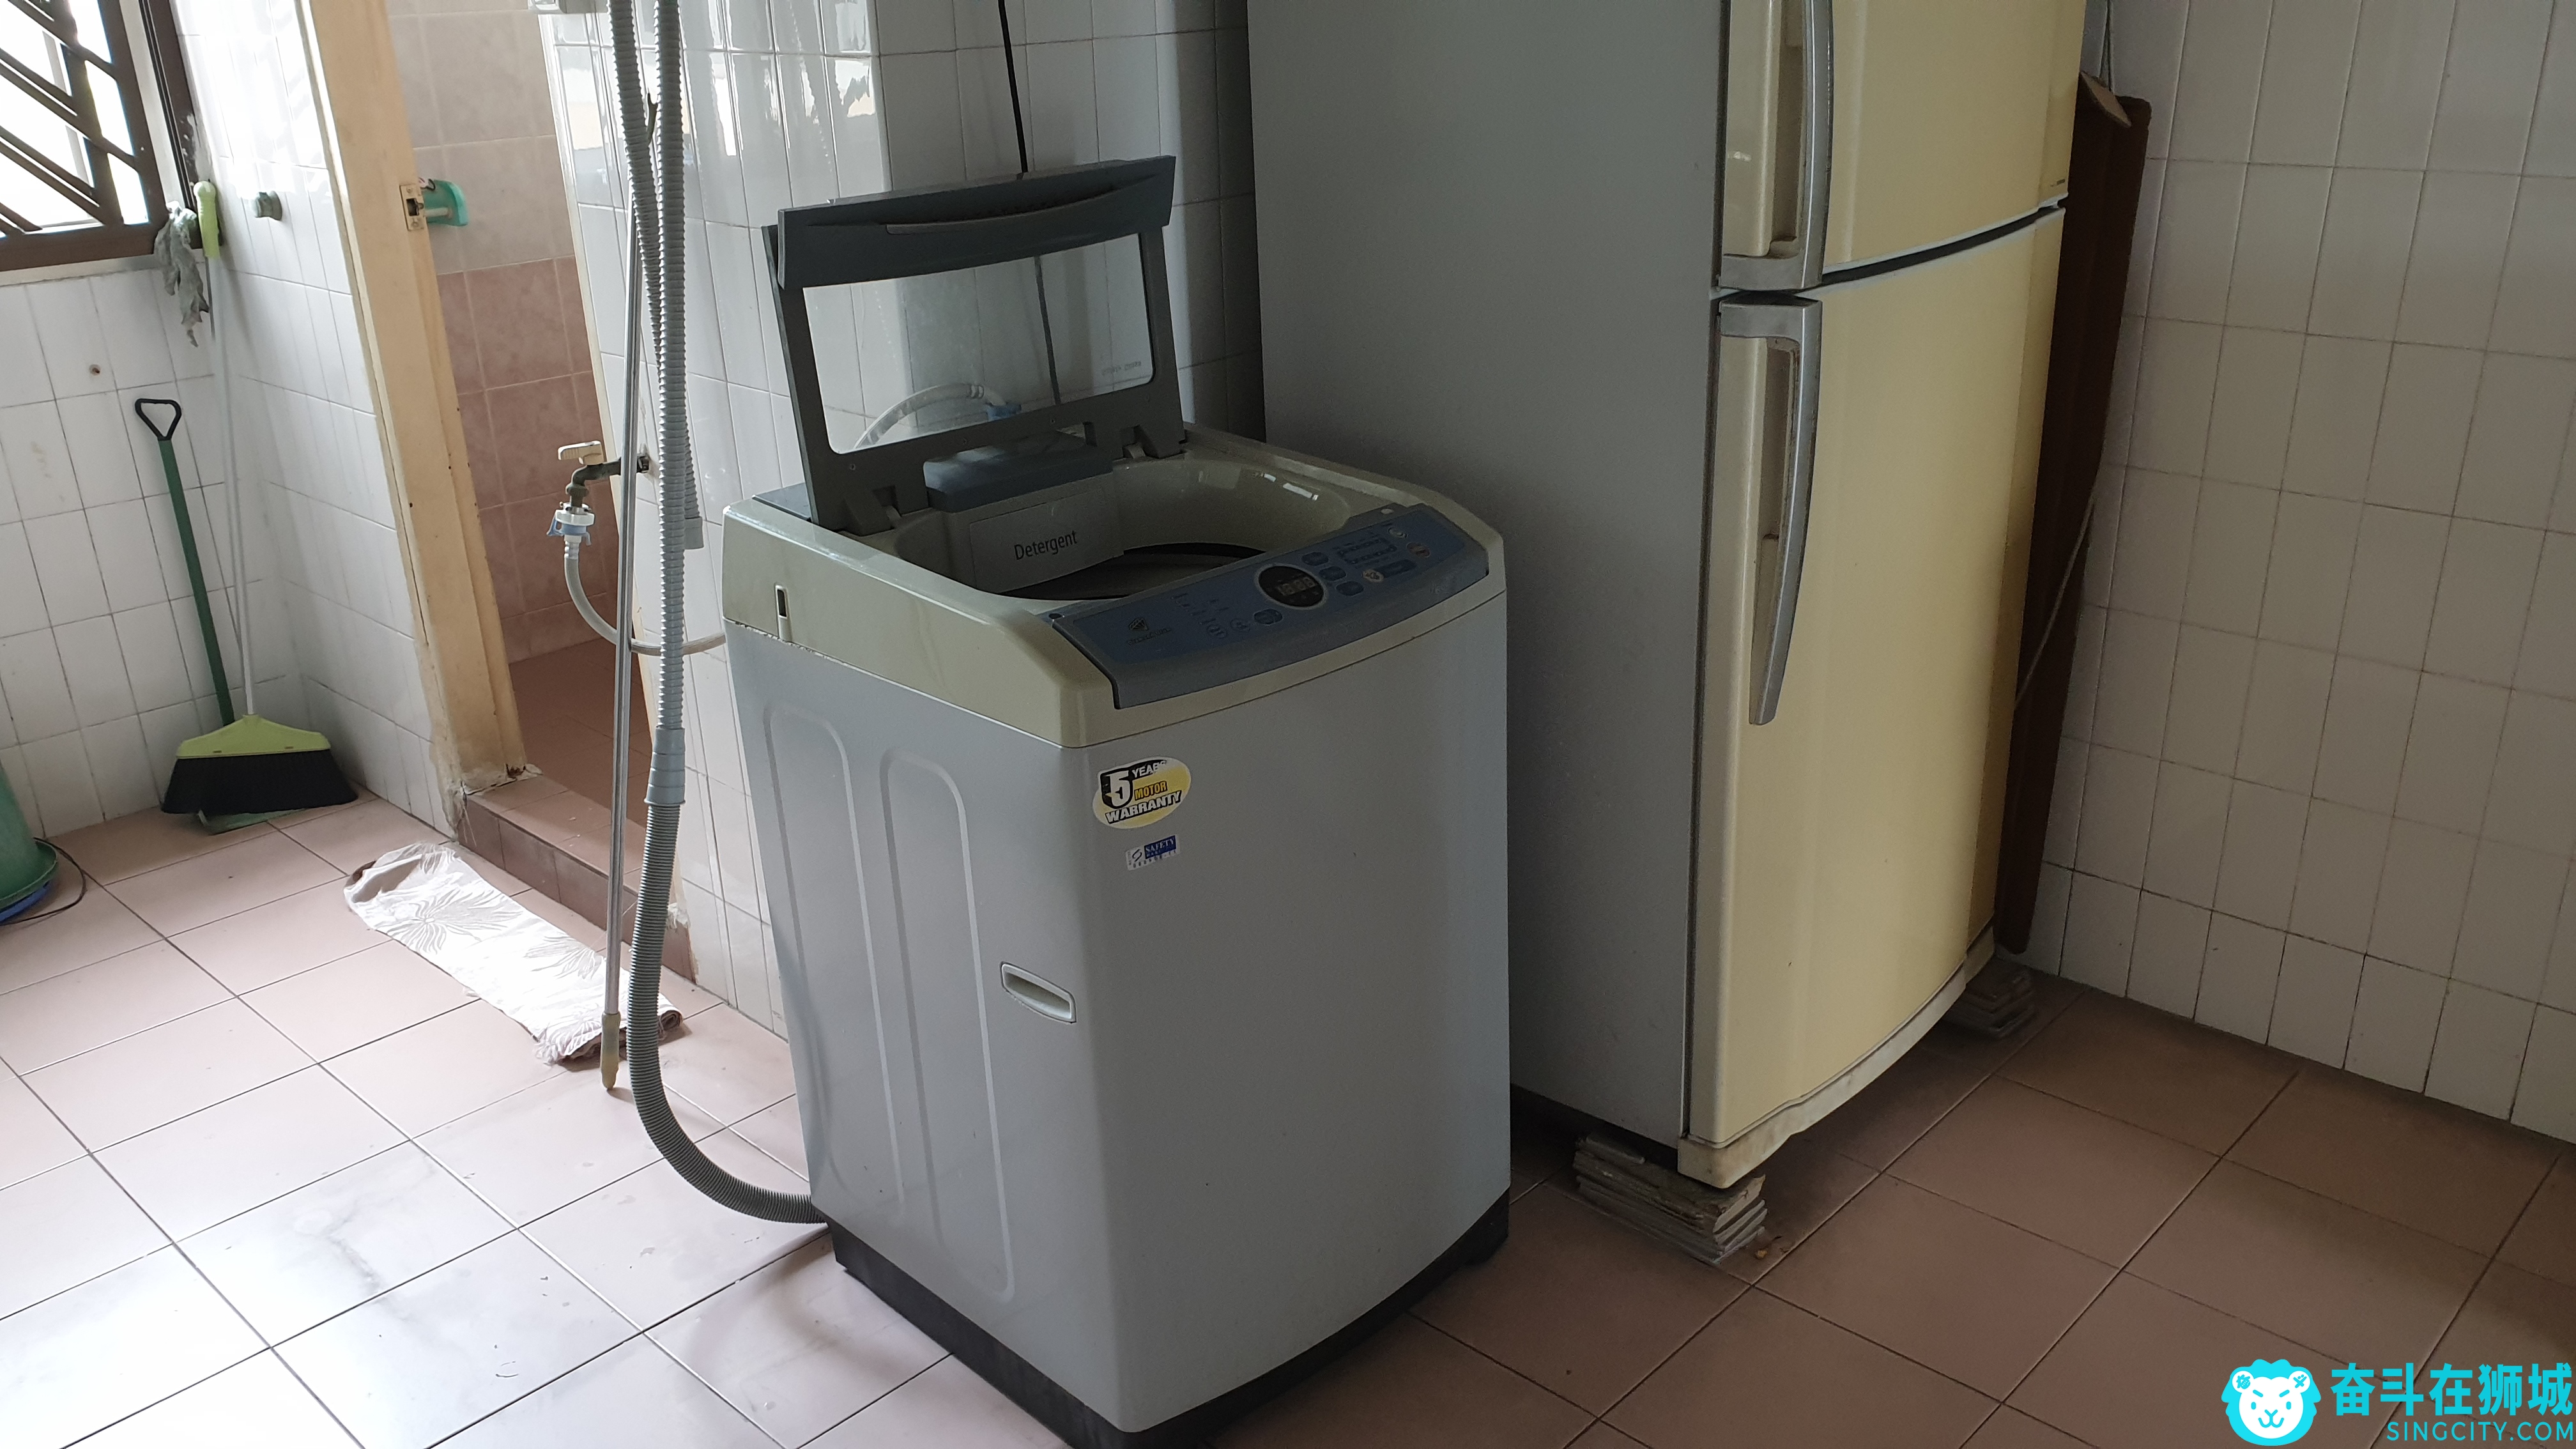 冰箱洗衣机1.jpg